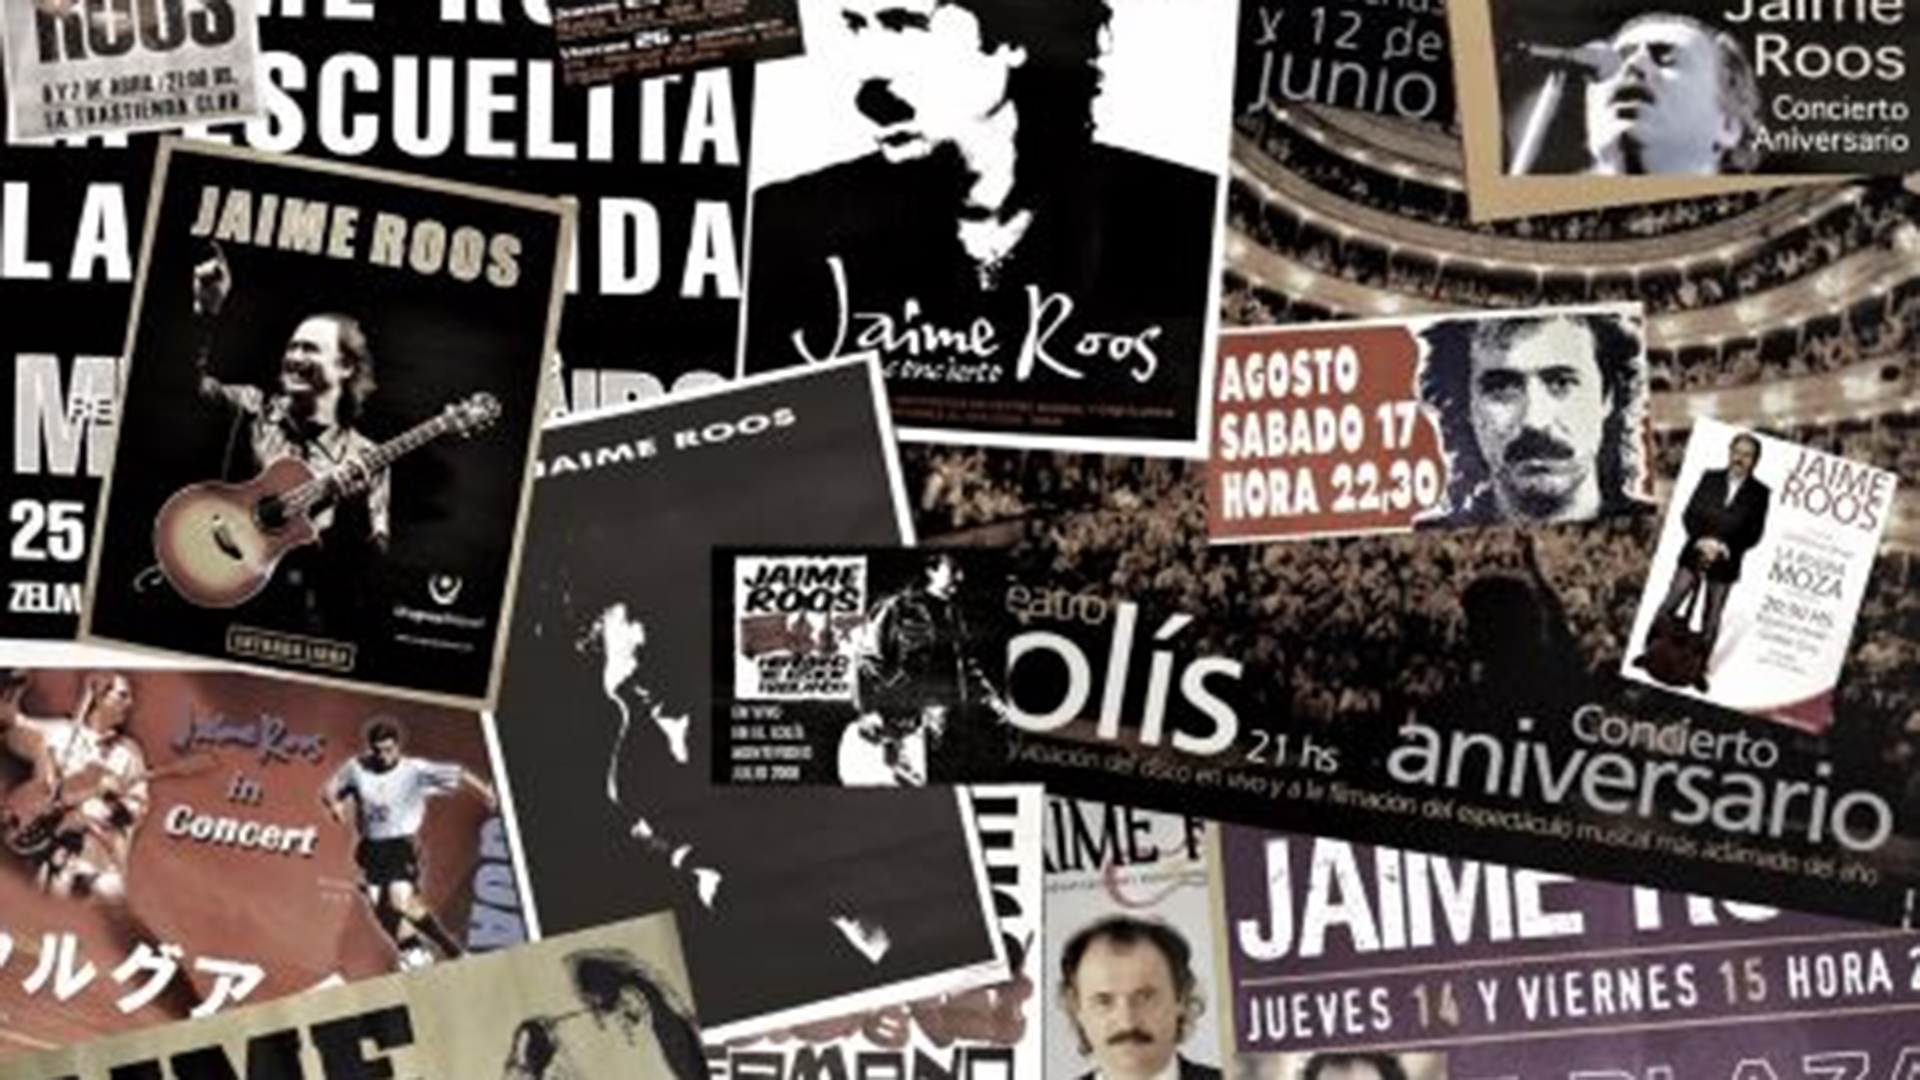 Collage gráfico que resume el espíritu del show "Mediosiglo" que Jaime Roos presentará en Buenos Aires el sábado 10 de junio (Realización: Sebastián Pereira y Jaime Roos - 2019)